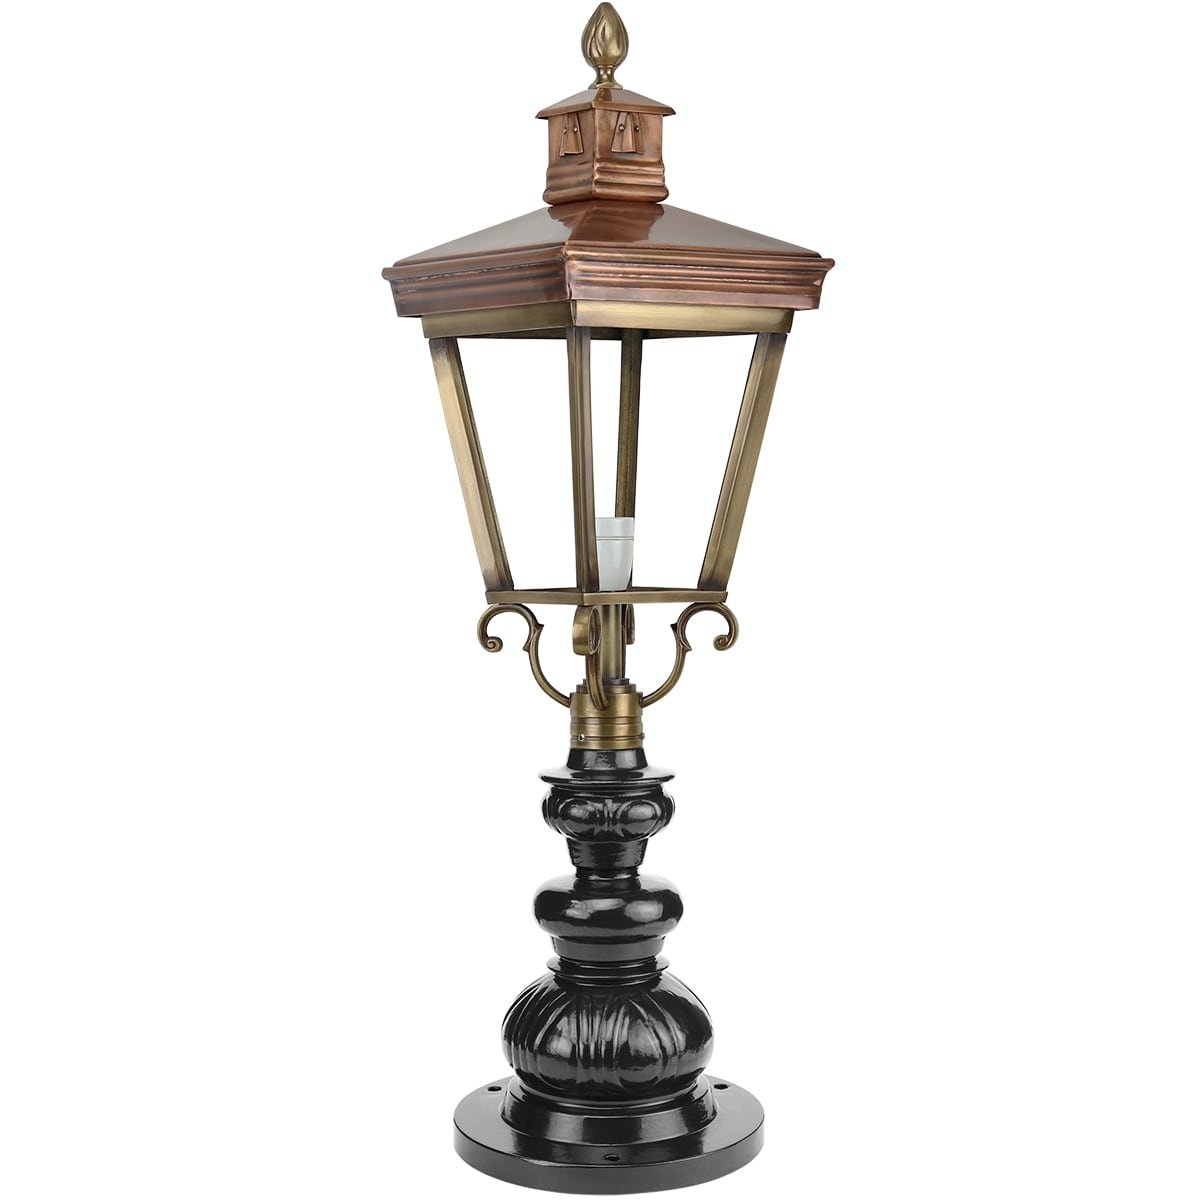 Buitenverlichting Klassiek Landelijk Oprit lamp hellevoetsluis brons - 91 cm